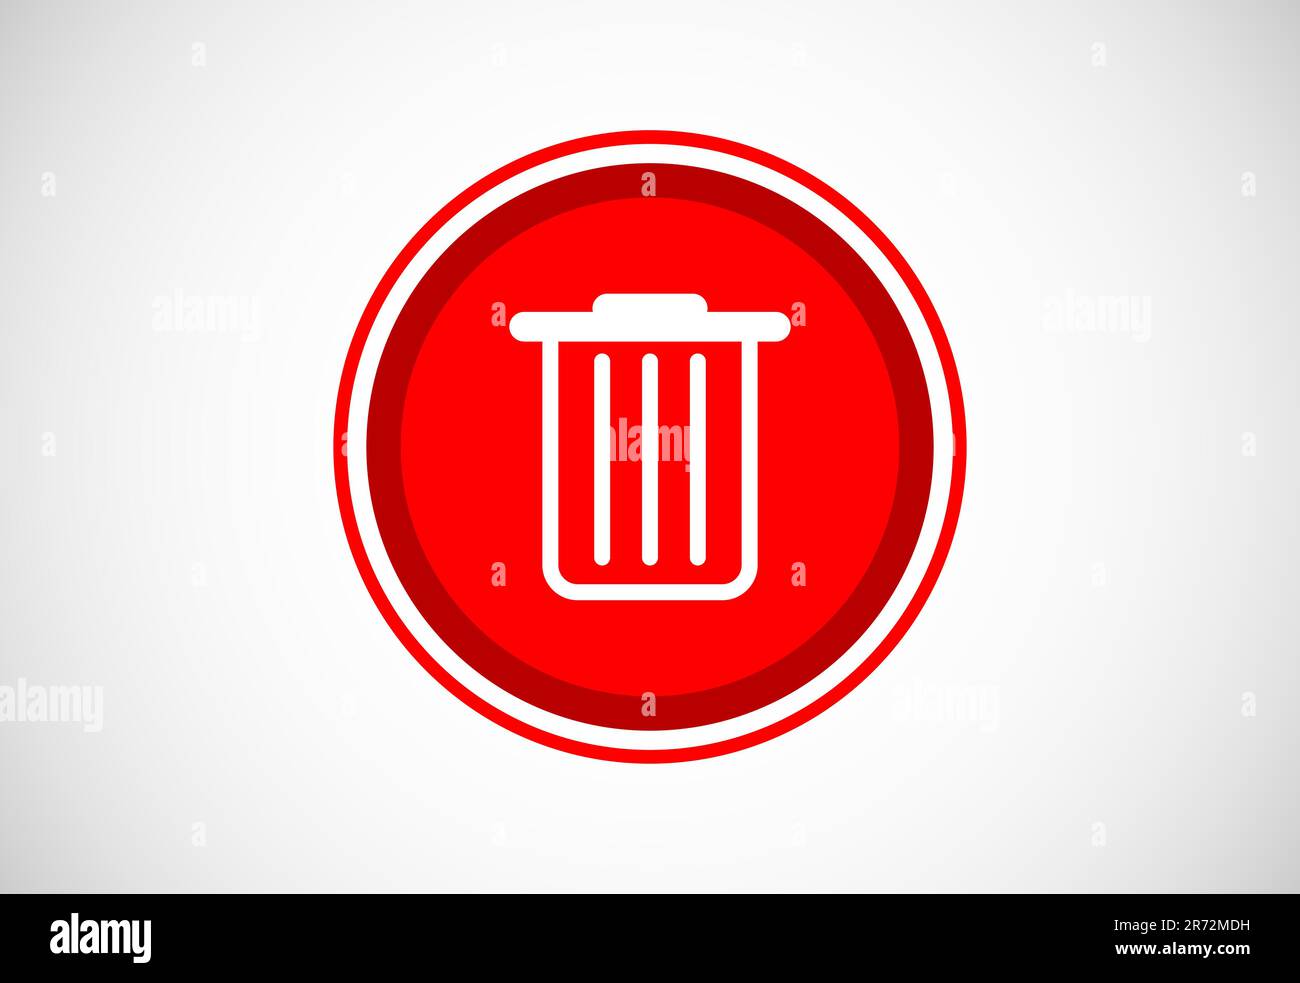 Delete button trash can, bin symbol. Delete web icon vector illustration Stock Vector